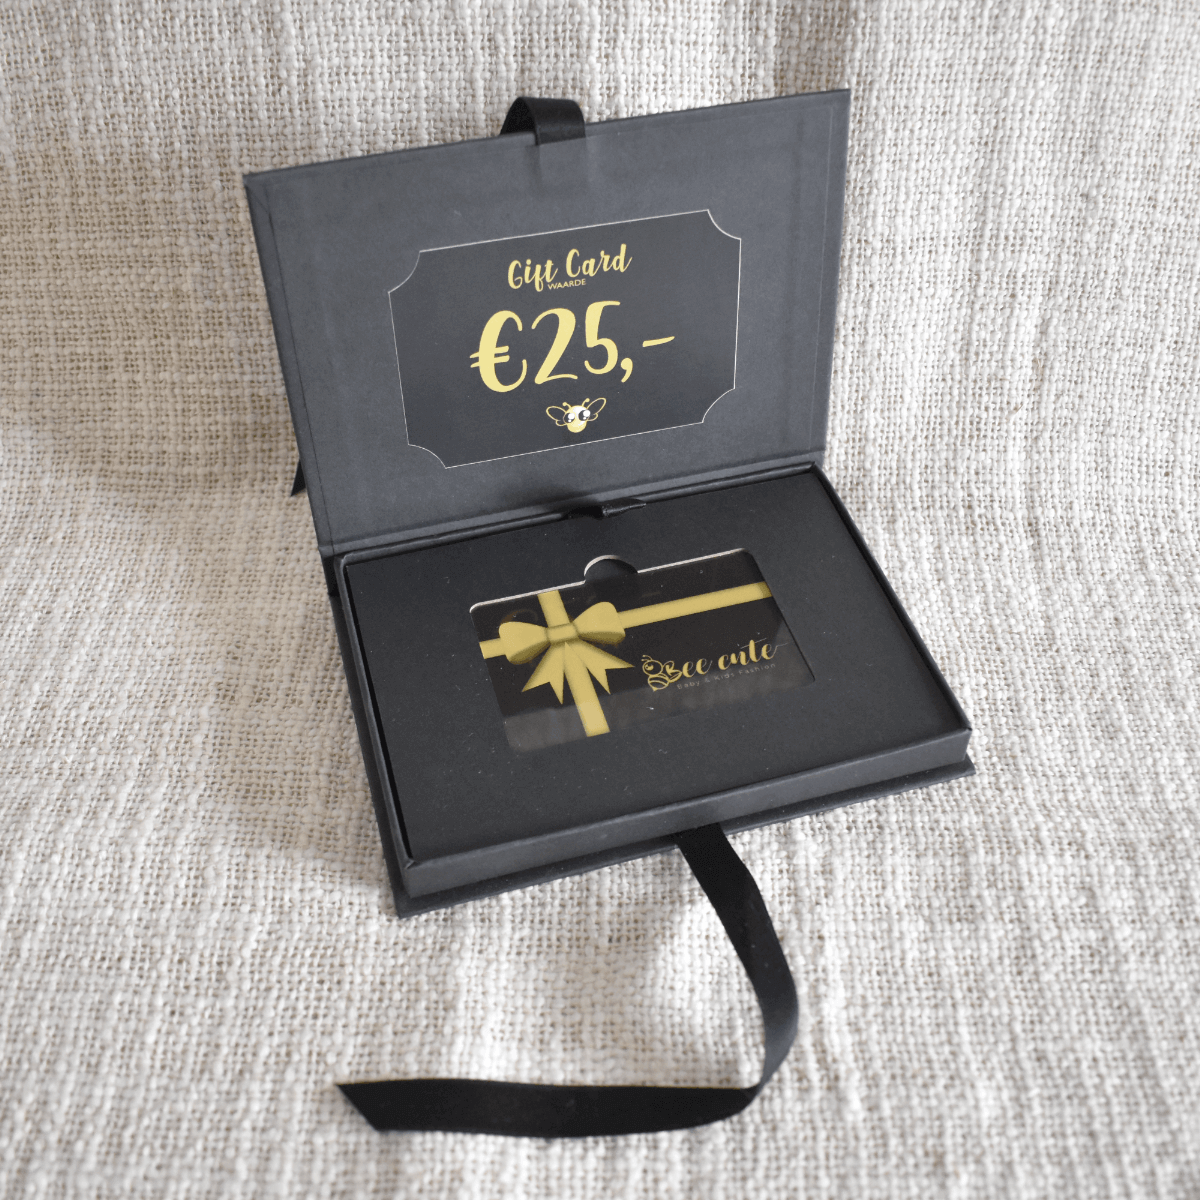 Bee Cute Gift Card - Cadeaukaart €25,- 2